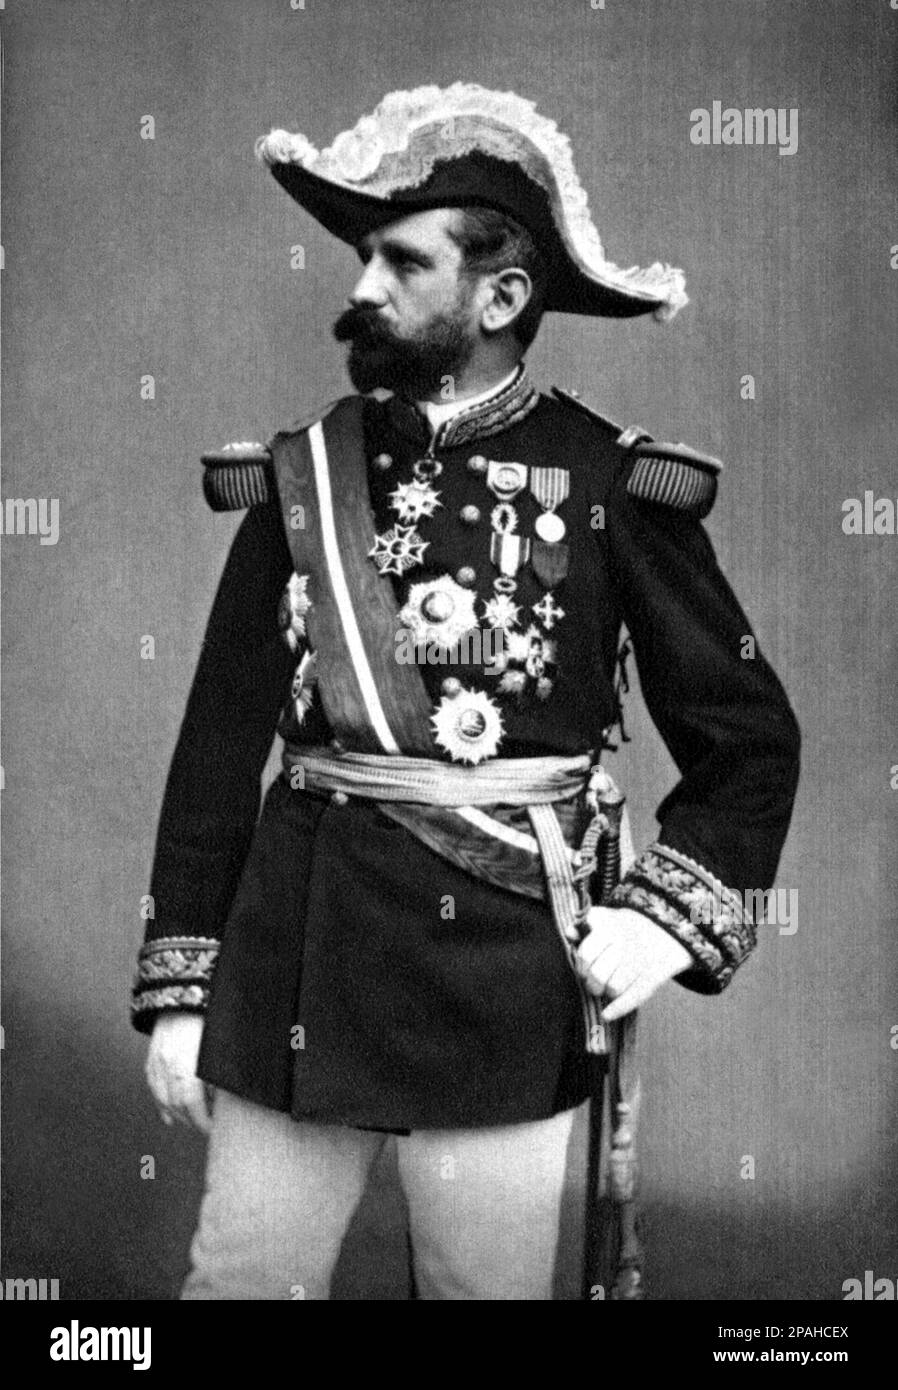 1880 Ca : GEORGES BOULANGER ( 29. April 1837 - 30. September 1891) war ein französischer General und reaktionärer Politiker . Auf diesem Foto in allgemeiner Militäruniform - POLITIKER - POLITICA - POLITISCH - foto Storiche - foto storica - Portrait - Rituto - Bart - barba - Militäruniform - Divisa - uniforme militare - Baffi - Schnurrbart - Generale - Hut - cappello - feluca - medaglie - Medaillen - profilo - Profil - Archivio GBB Stockfoto